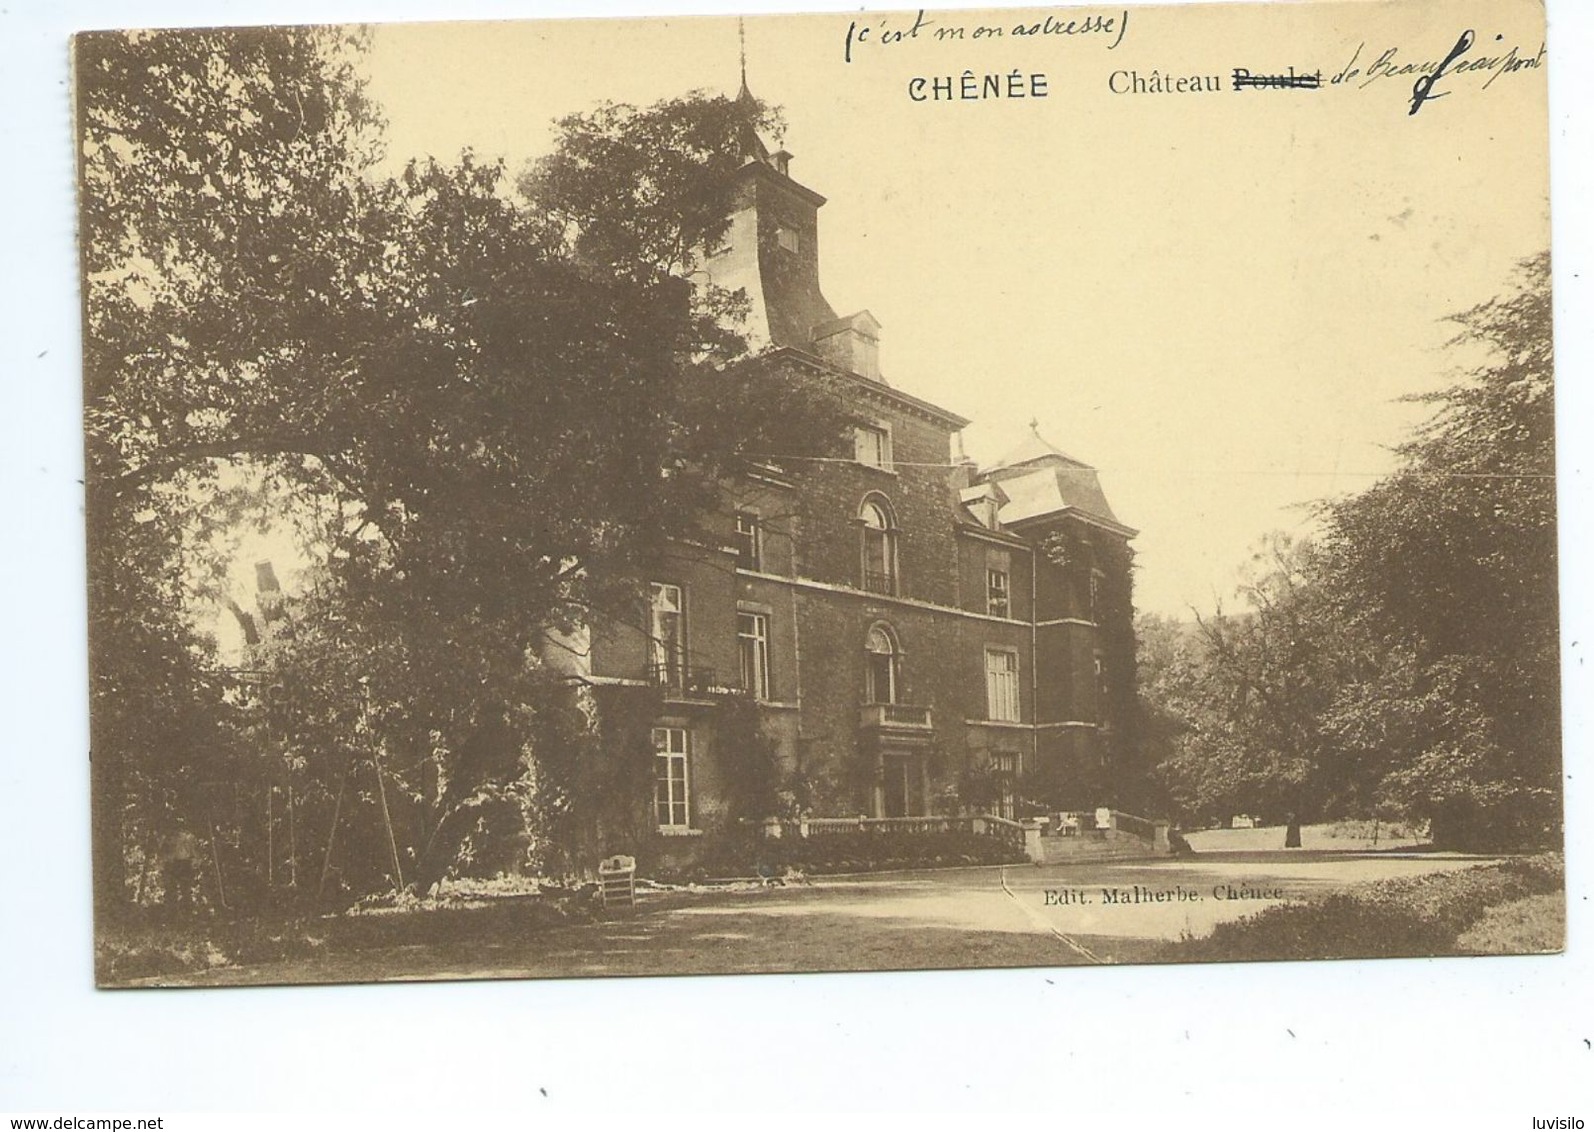 Chenee Château Poulet - Liège